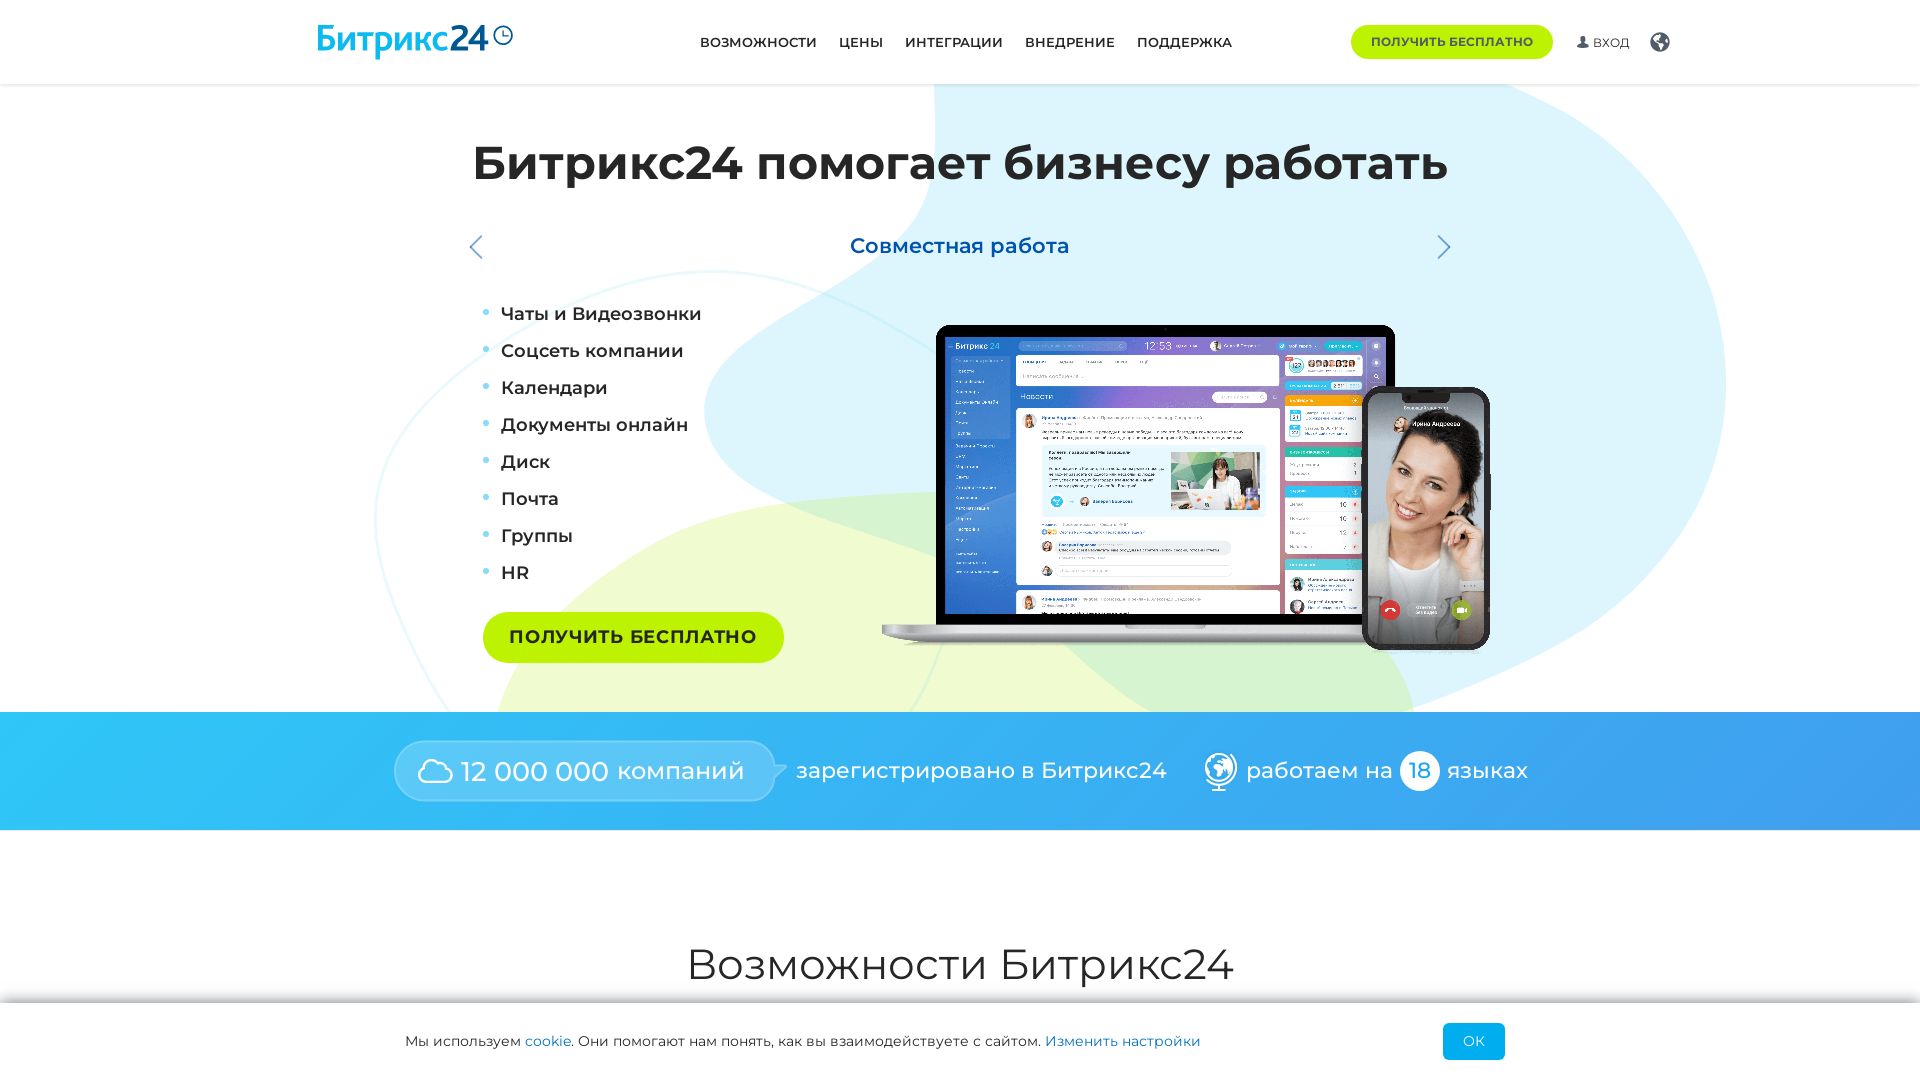 Website status bitrix24.ru is   ONLINE